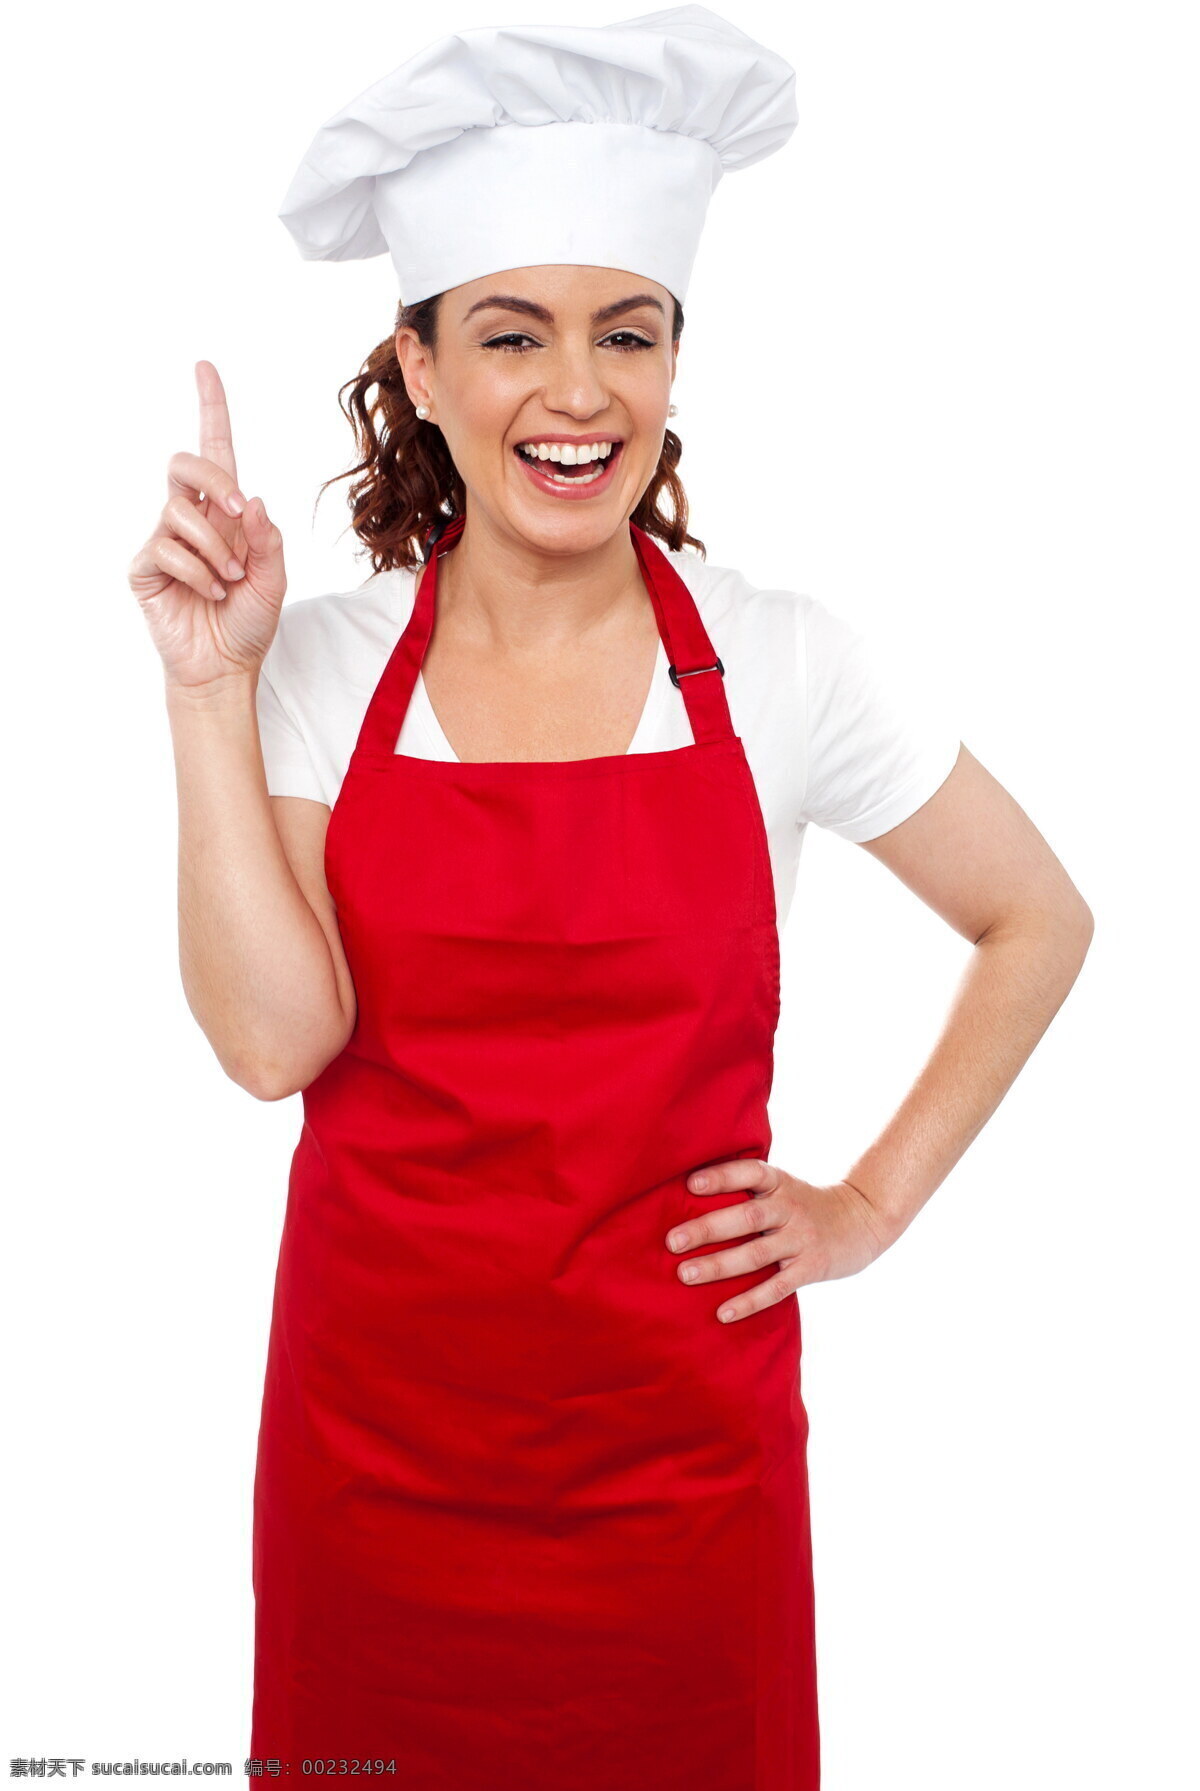 伸出 一根 手指 美女 厨师 笑容 女厨师 红色围裙 白色帽子 商务人士 人物图片